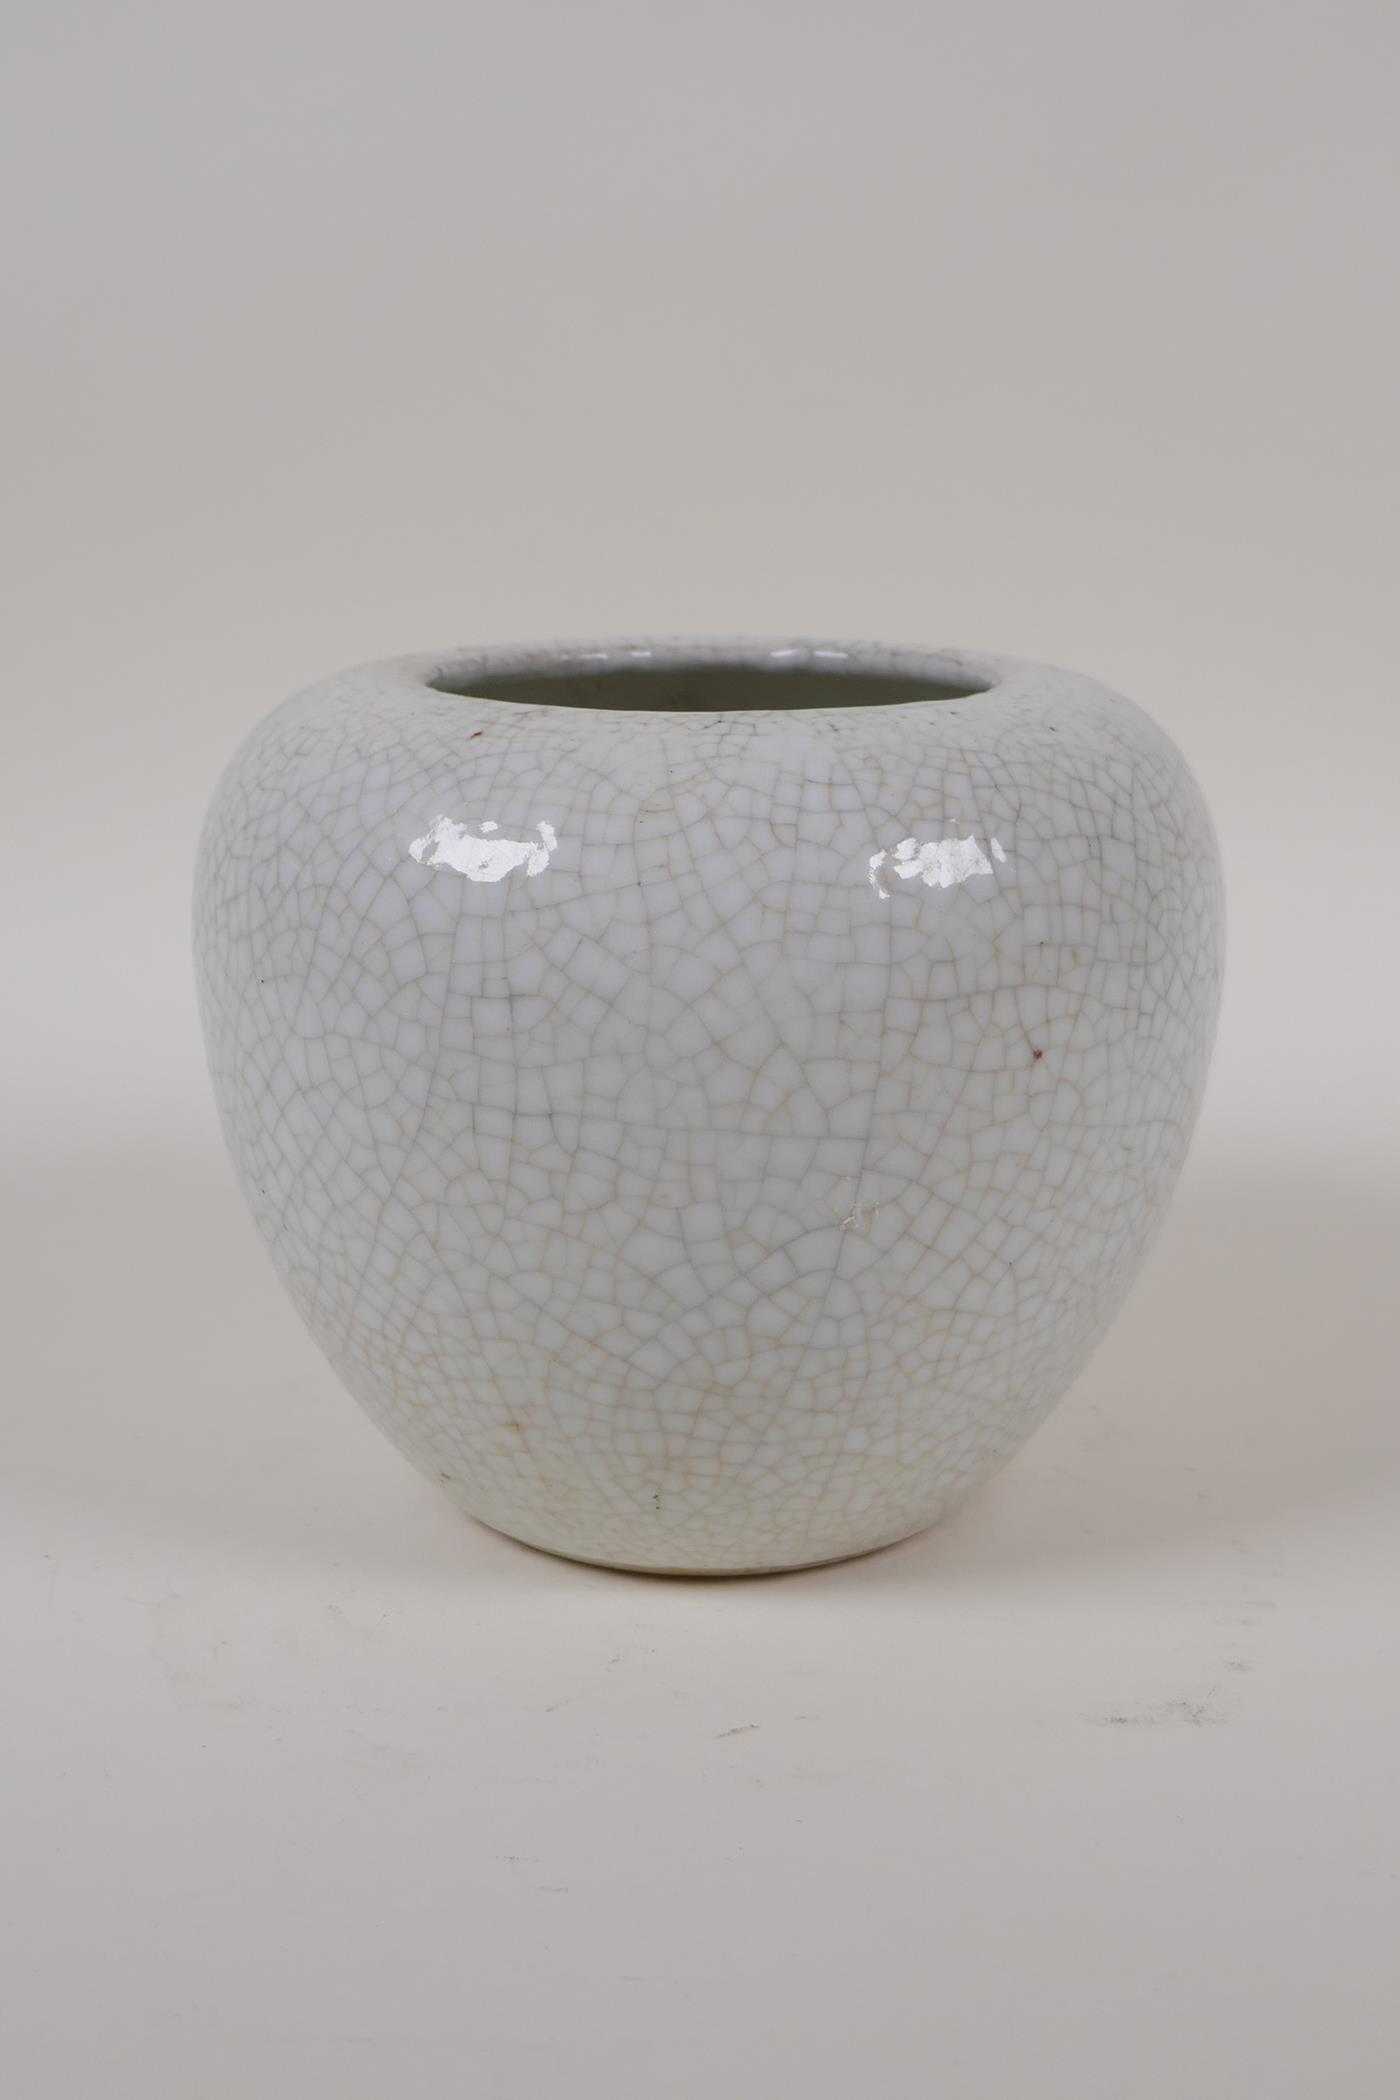 A Chinese cream crackleglazed porcelain jar, 5" high - Image 2 of 4